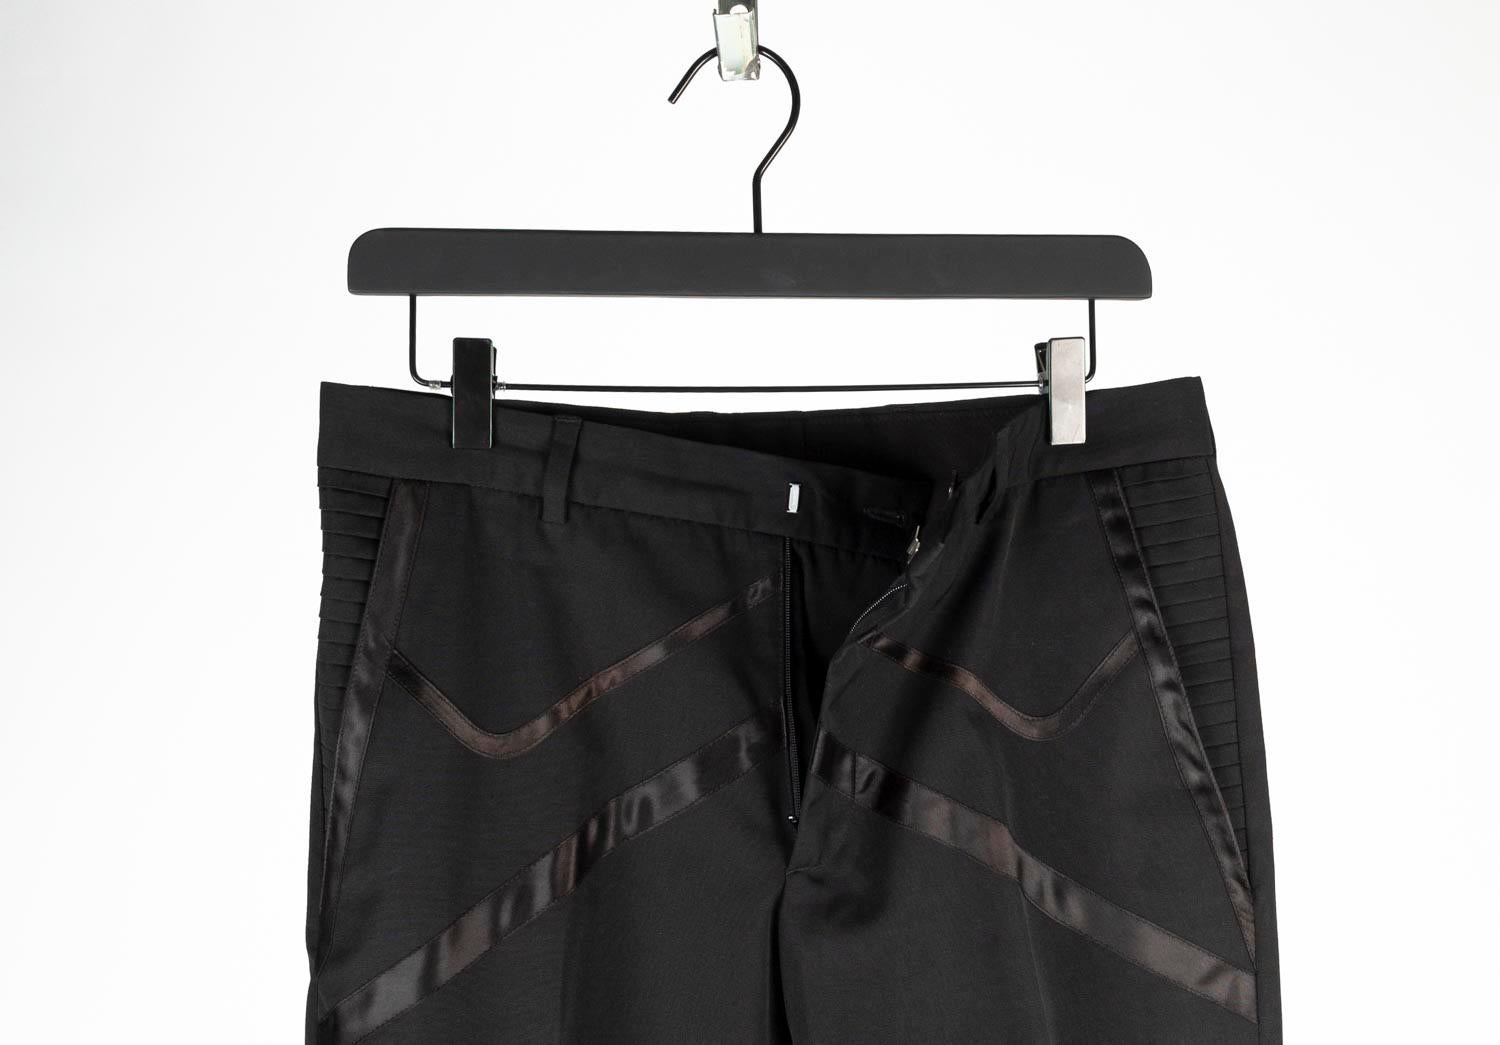 100% authentique Dior Homme from SS04 Strip Men Pants.
Couleur : noir
(La couleur réelle peut varier légèrement en raison de l'interprétation individuelle de l'écran de l'ordinateur).
Matière : 67% polyester, 33% coton
Taille de l'étiquette : ITA 46